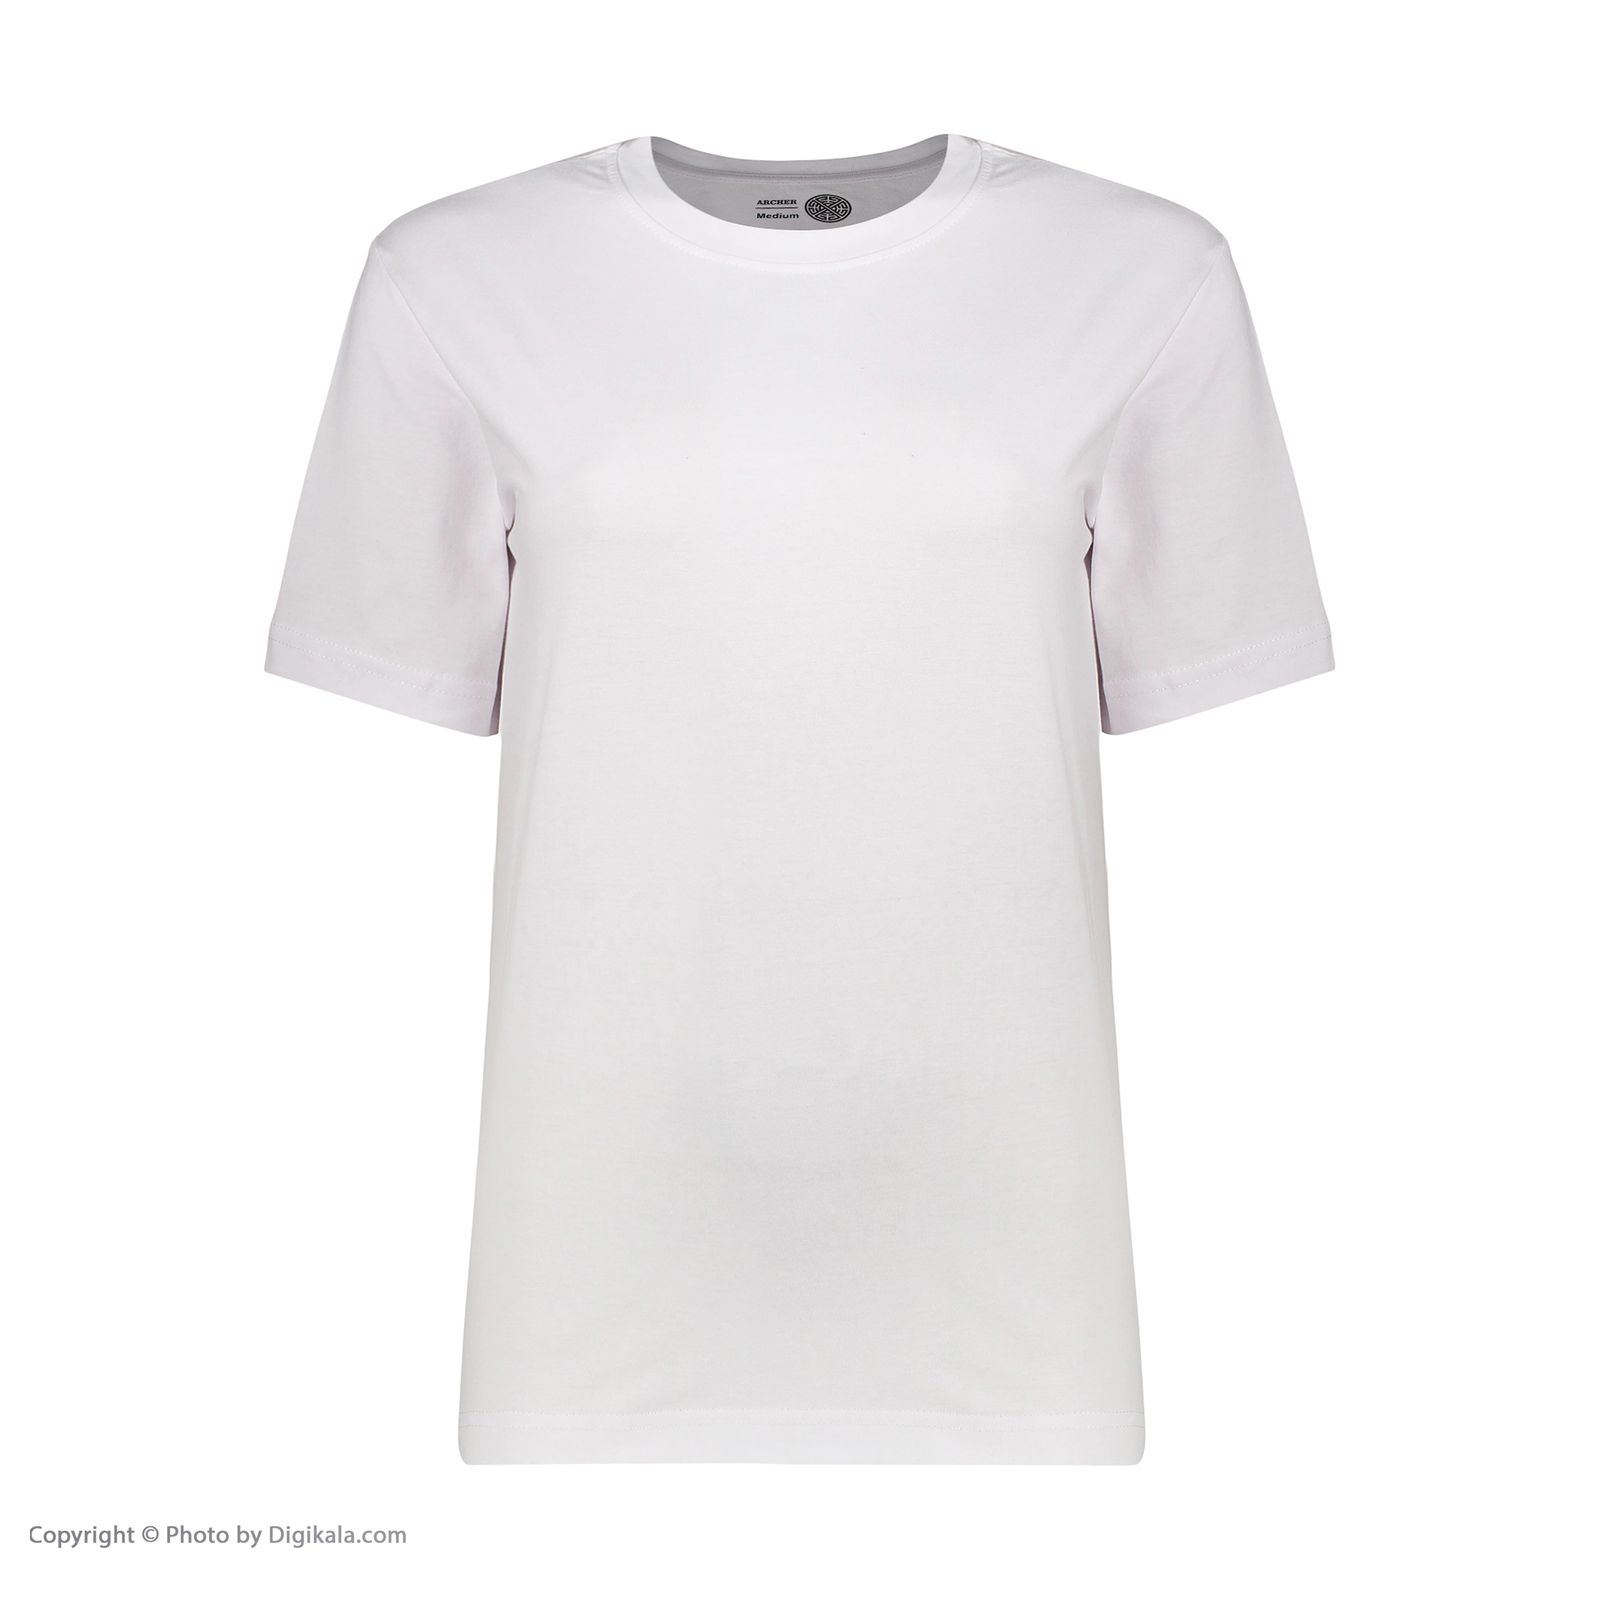 تی شرت آستین کوتاه زنانه آرچر مدل 1016-001 -  - 2